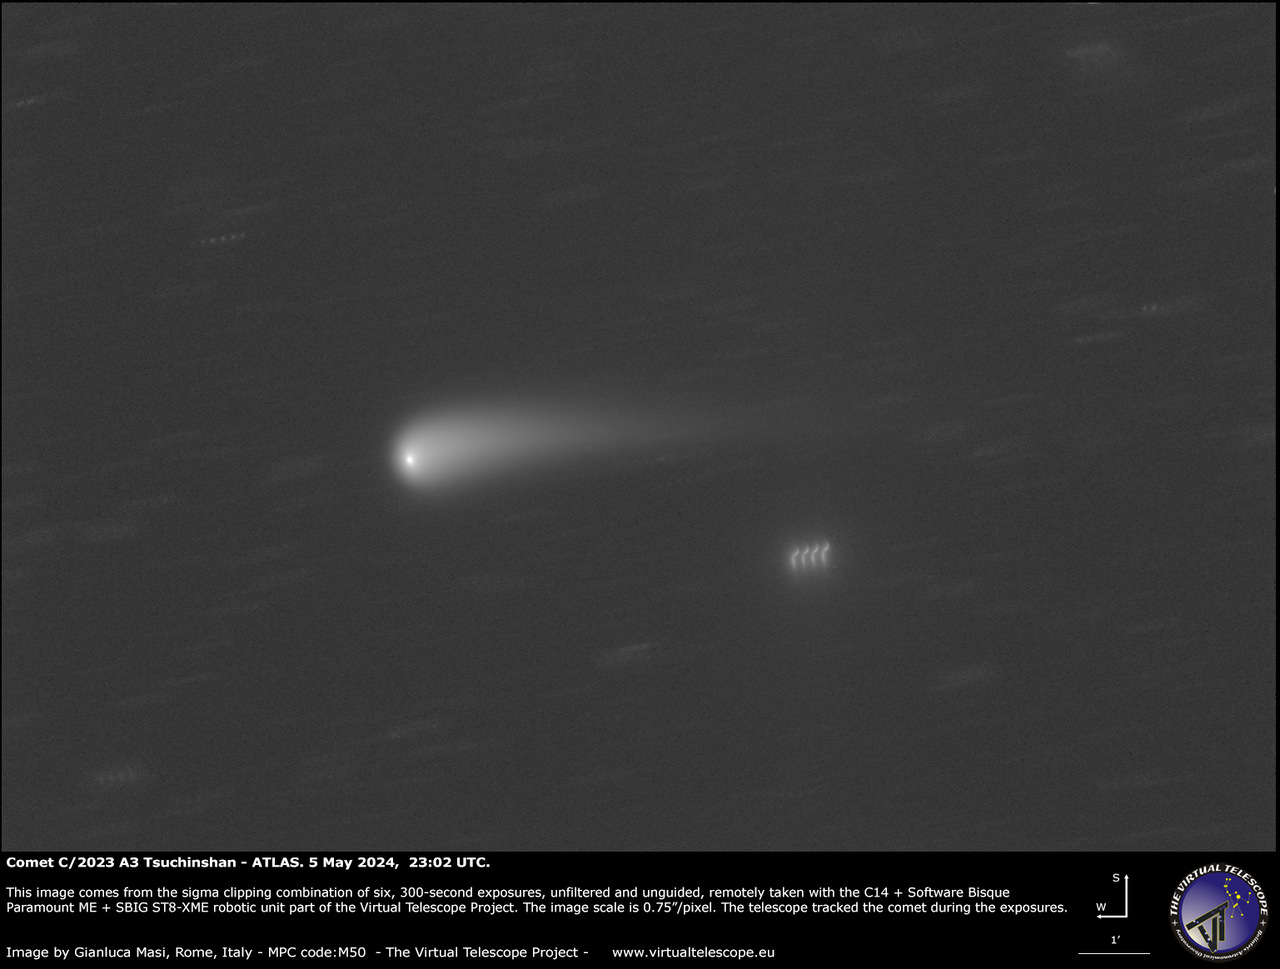 üstökös szabad szemmel látható